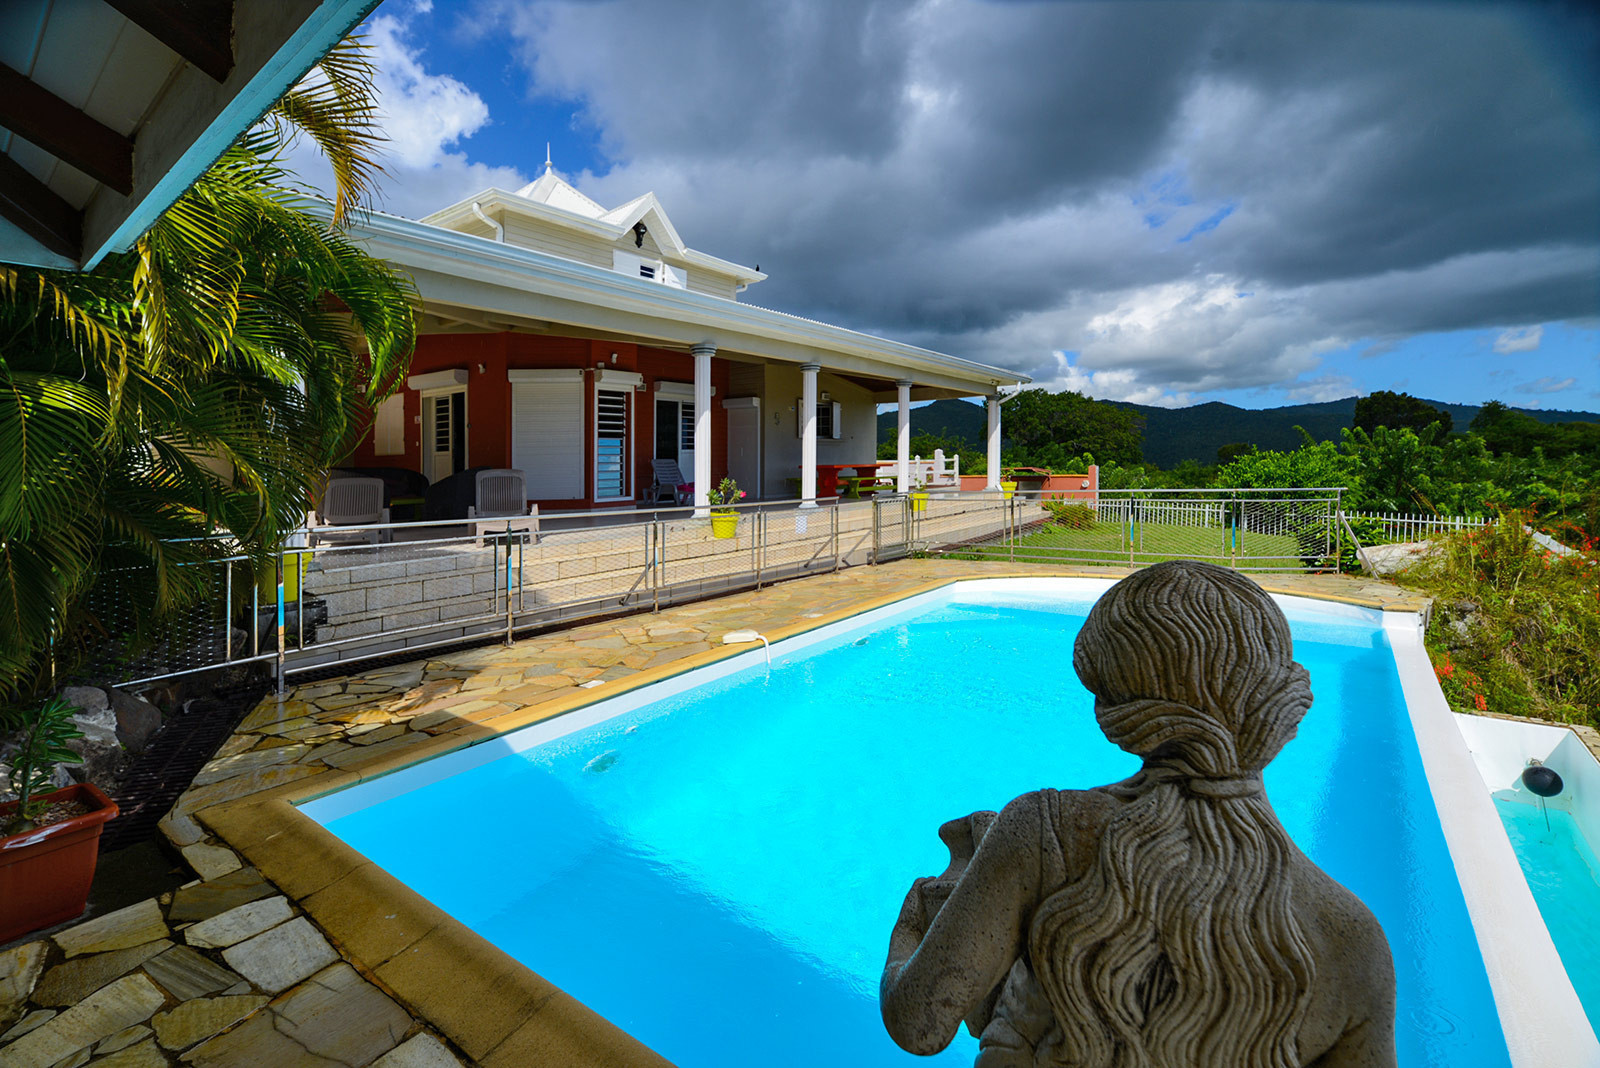 Villa NID d'AIGLE rental Martinique le Diamant sea view pool 3 bedrooms - Une vue exceptionnelle